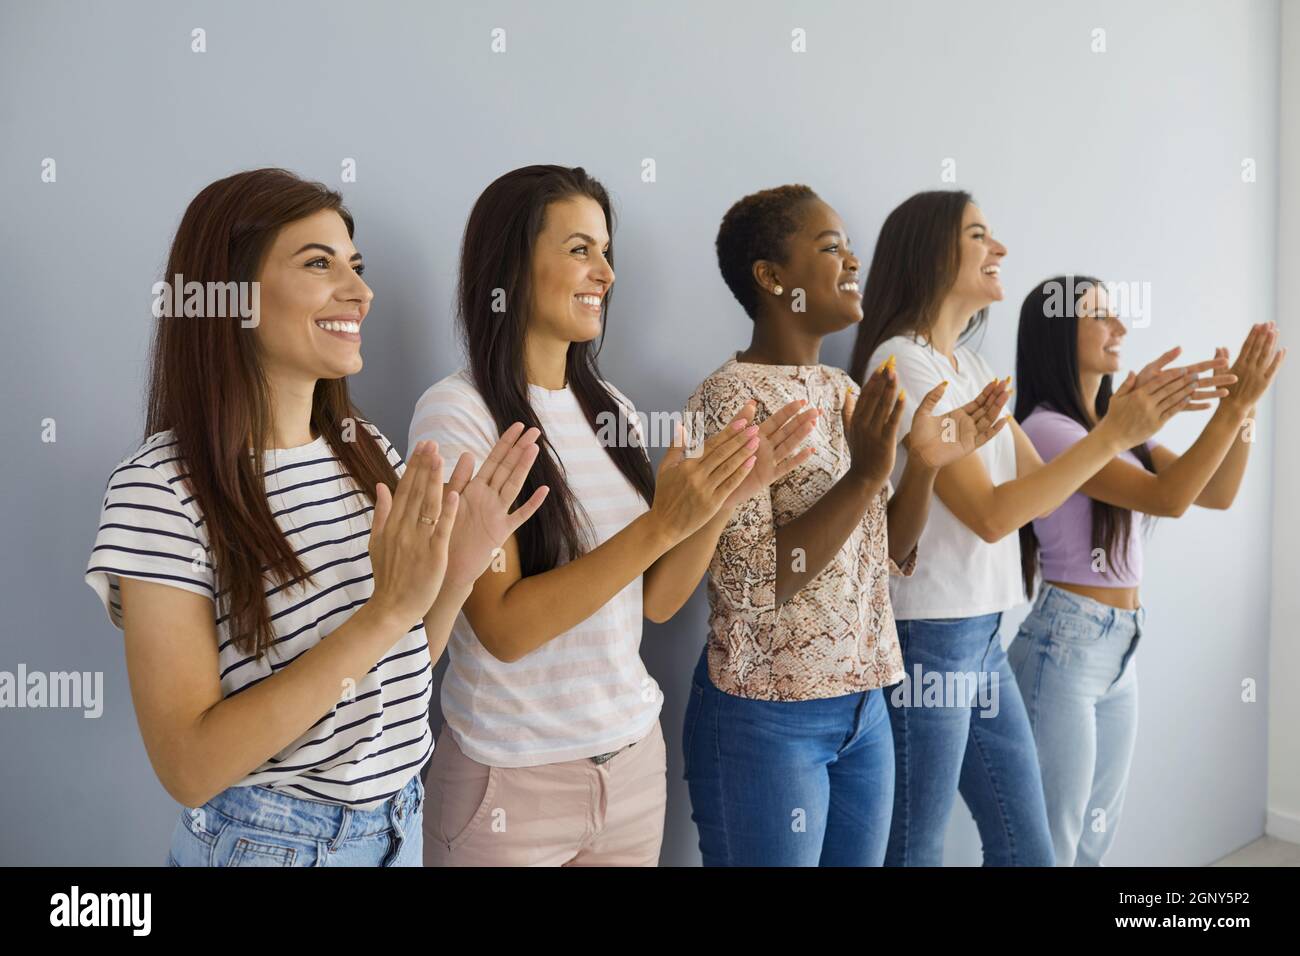 Eine Gruppe glücklicher junger multiethnischer Frauen, die an der Wand stehen, lächeln und applaudieren Stockfoto